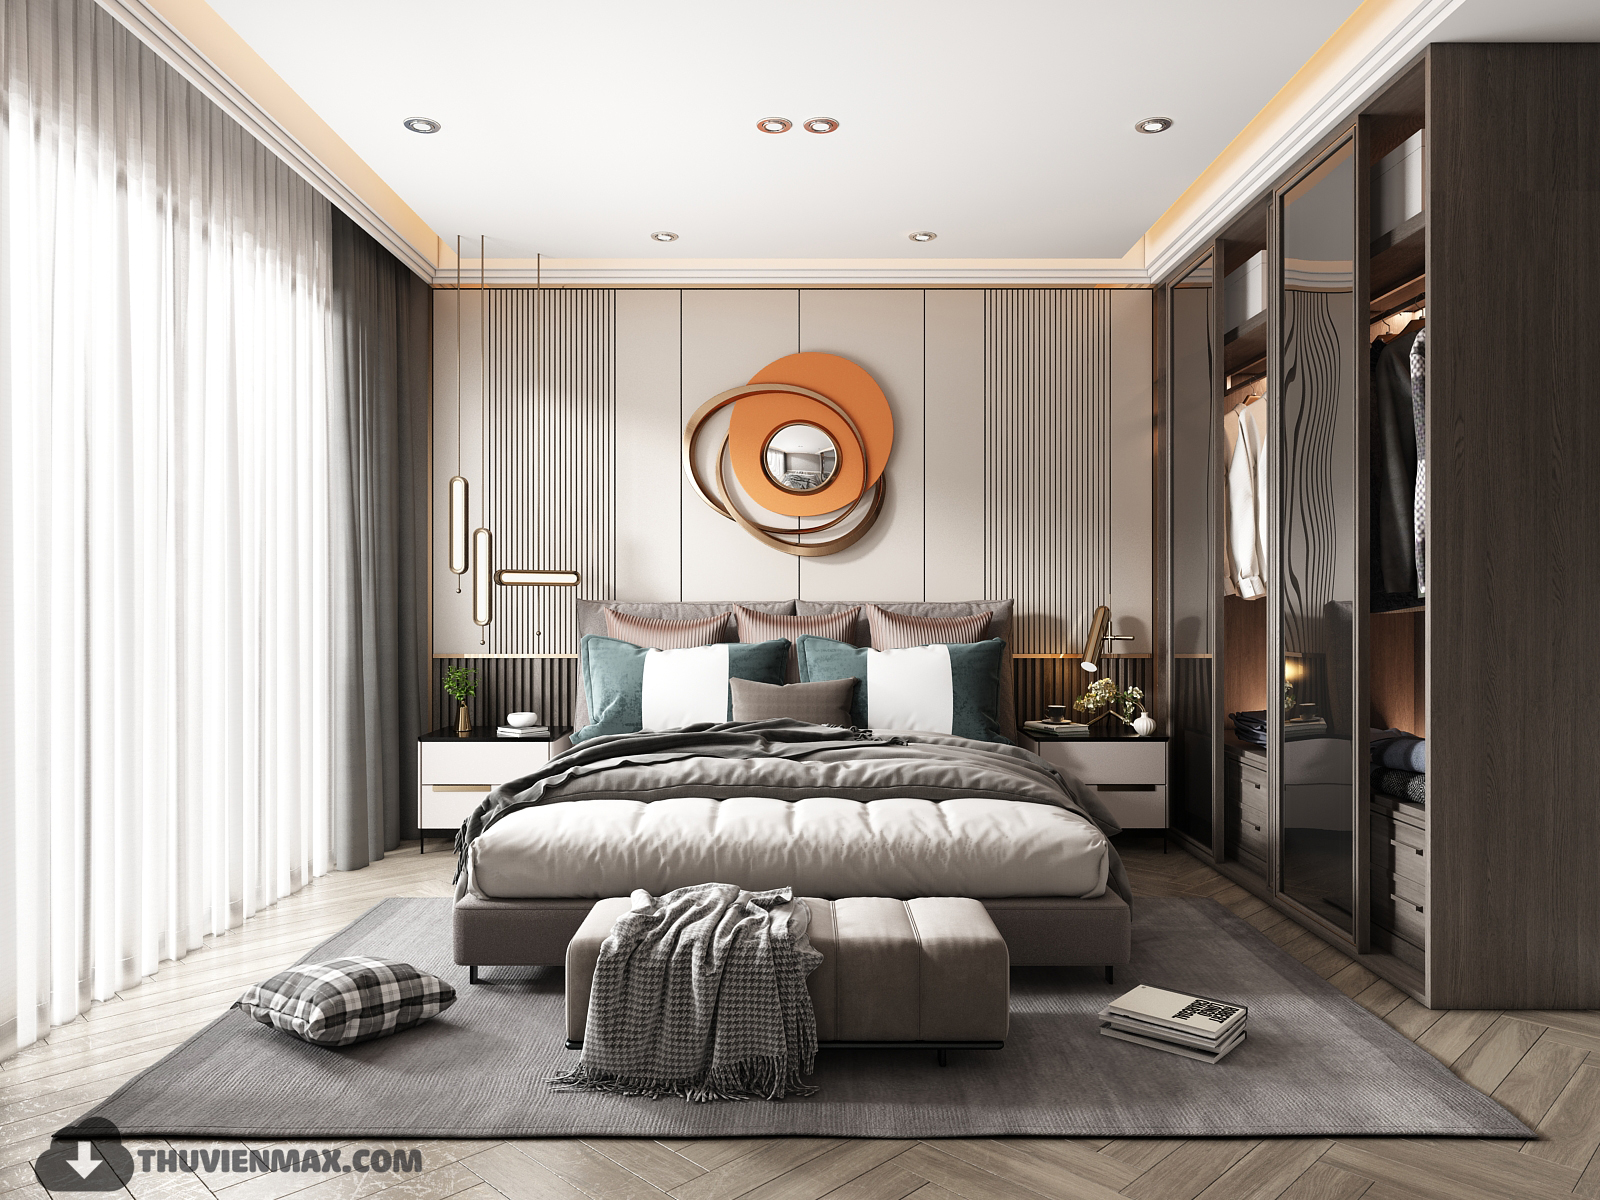 3D Interior Model Bed Room 0266 Scene 3dsmax